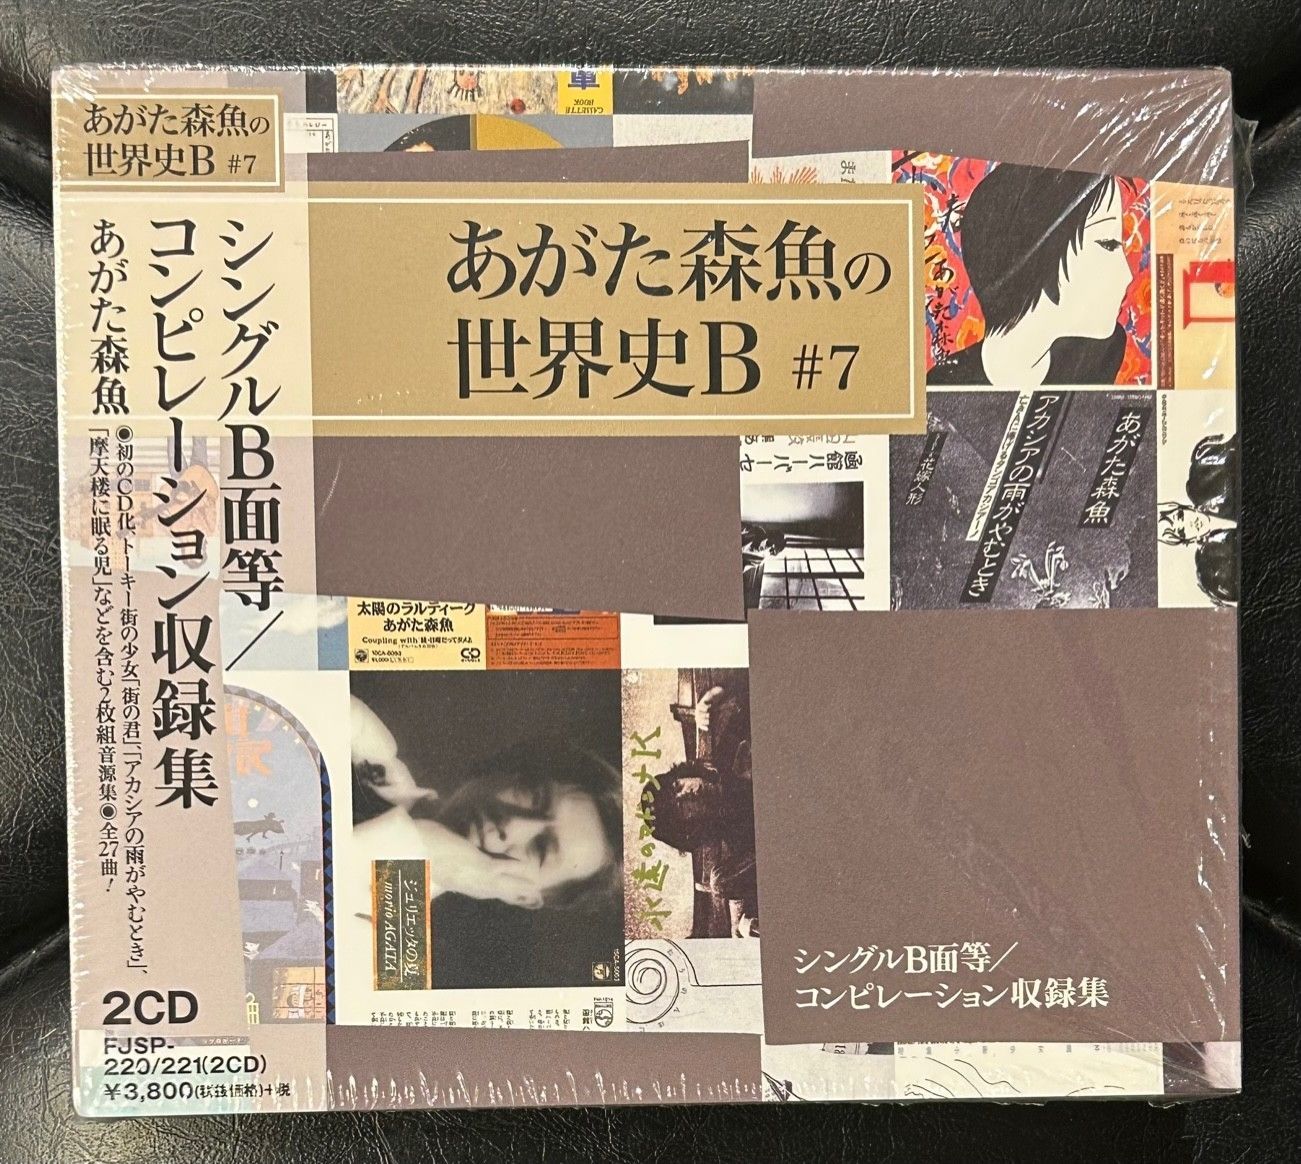 【CD2枚組】あがた森魚 「シングルB面/コンピレーション収録集」